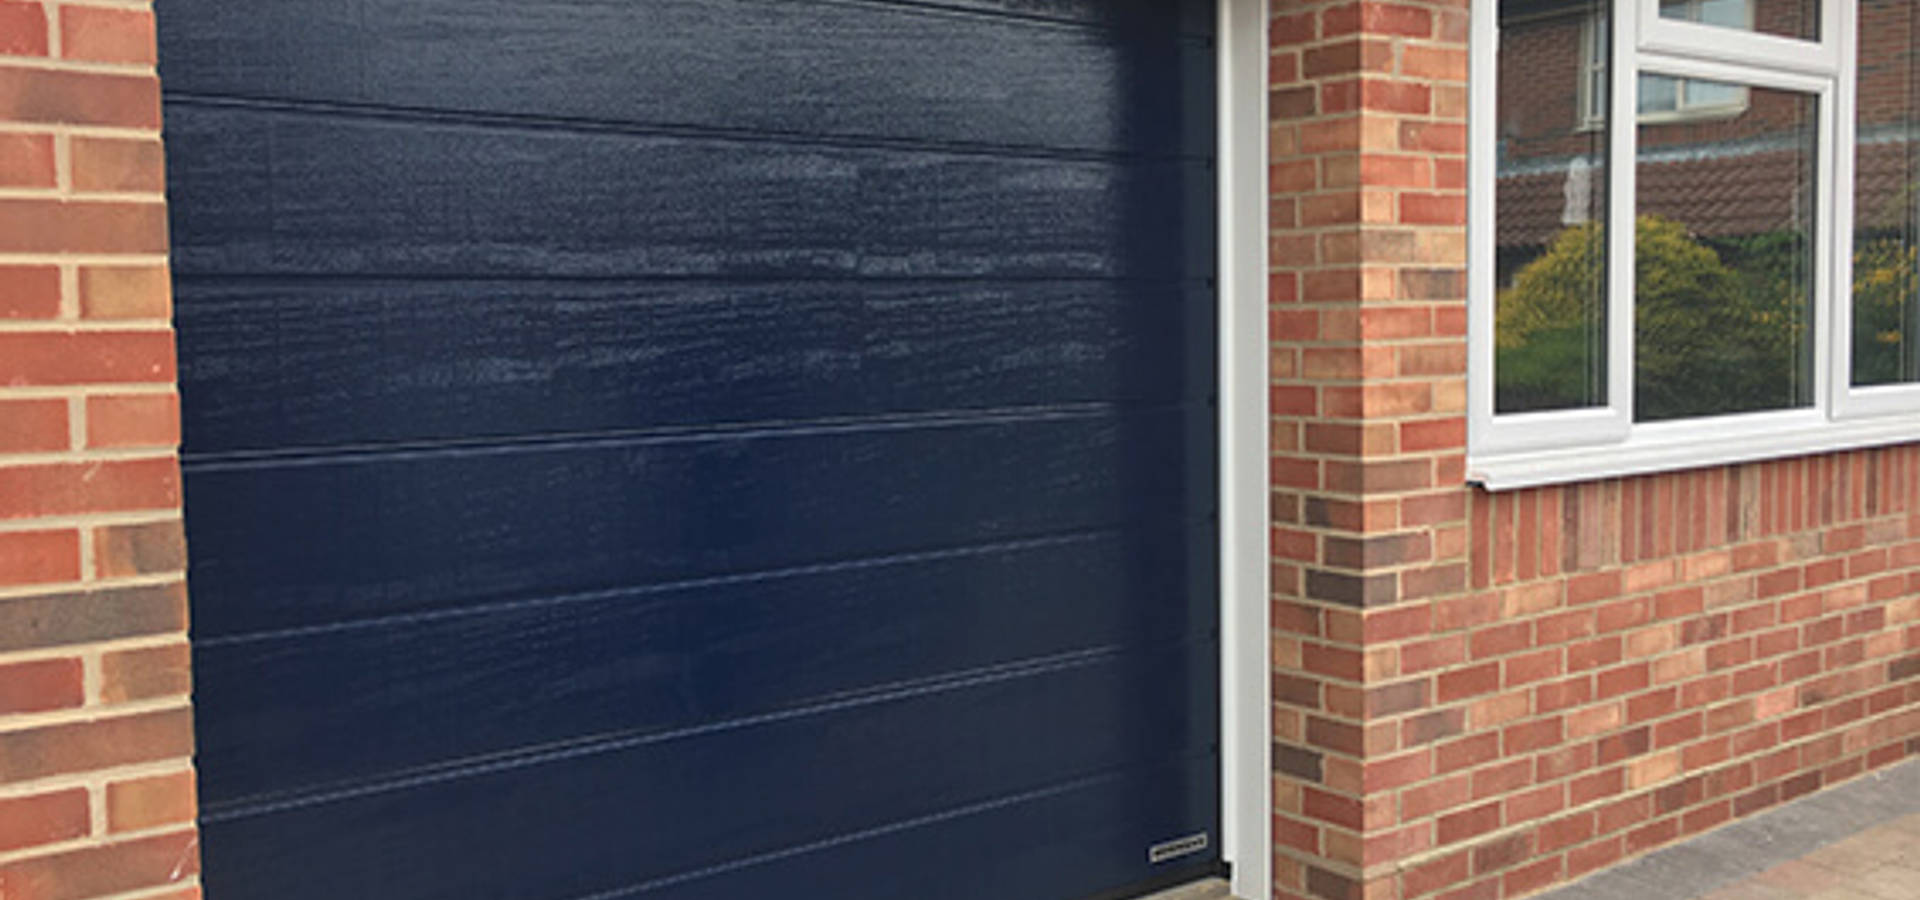 David Blower Garage Door Solutions